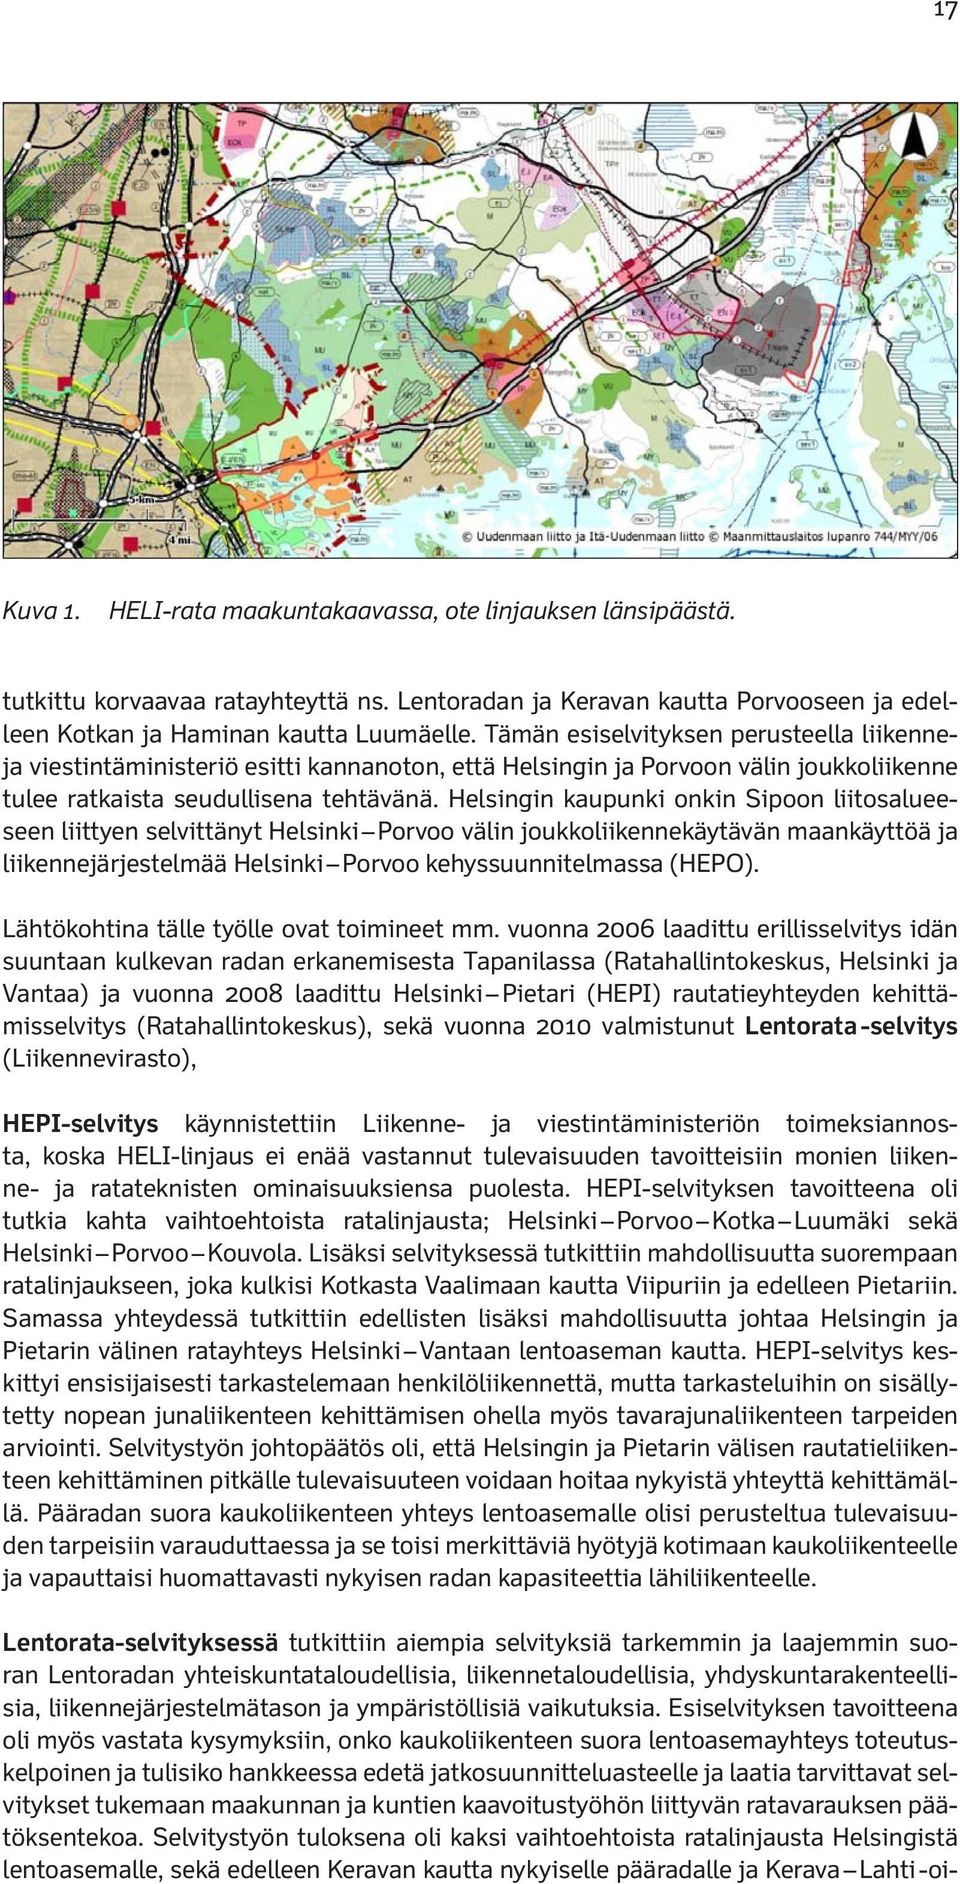 Helsingin kaupunki onkin Sipoon liitosalueeseen liittyen selvittänyt Helsinki Porvoo välin joukkoliikennekäytävän maankäyttöä ja liikennejärjestelmää Helsinki Porvoo kehyssuunnitelmassa (HEPO).